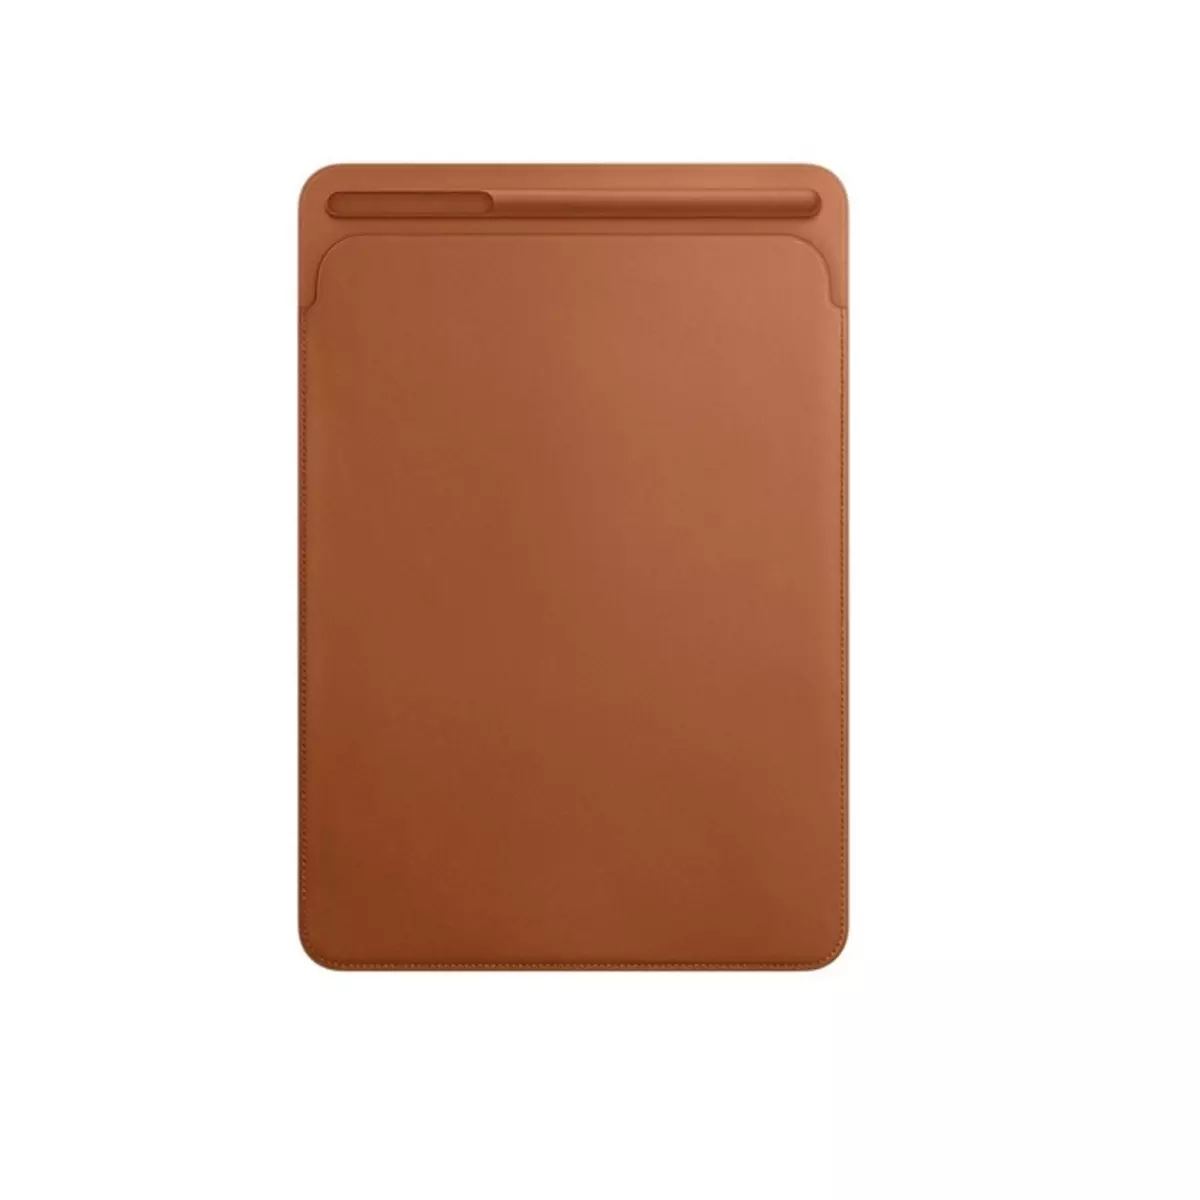 APPLE Etui pour tablette MPU22ZM/A pour iPad pro 10.5 pouces - Marron